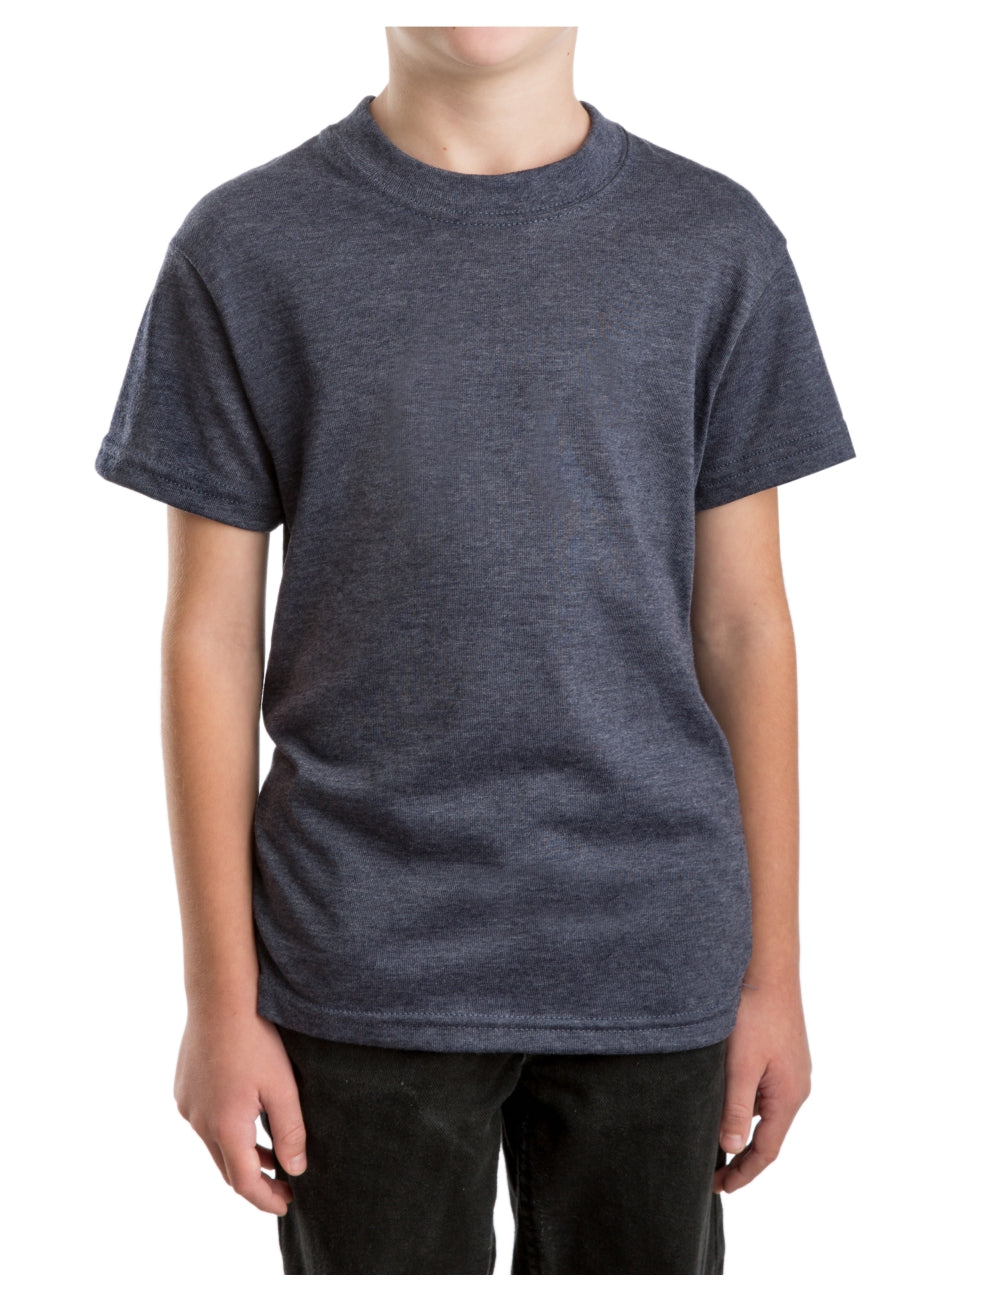 Youth Basic Short Sleeve Crew T-shirt